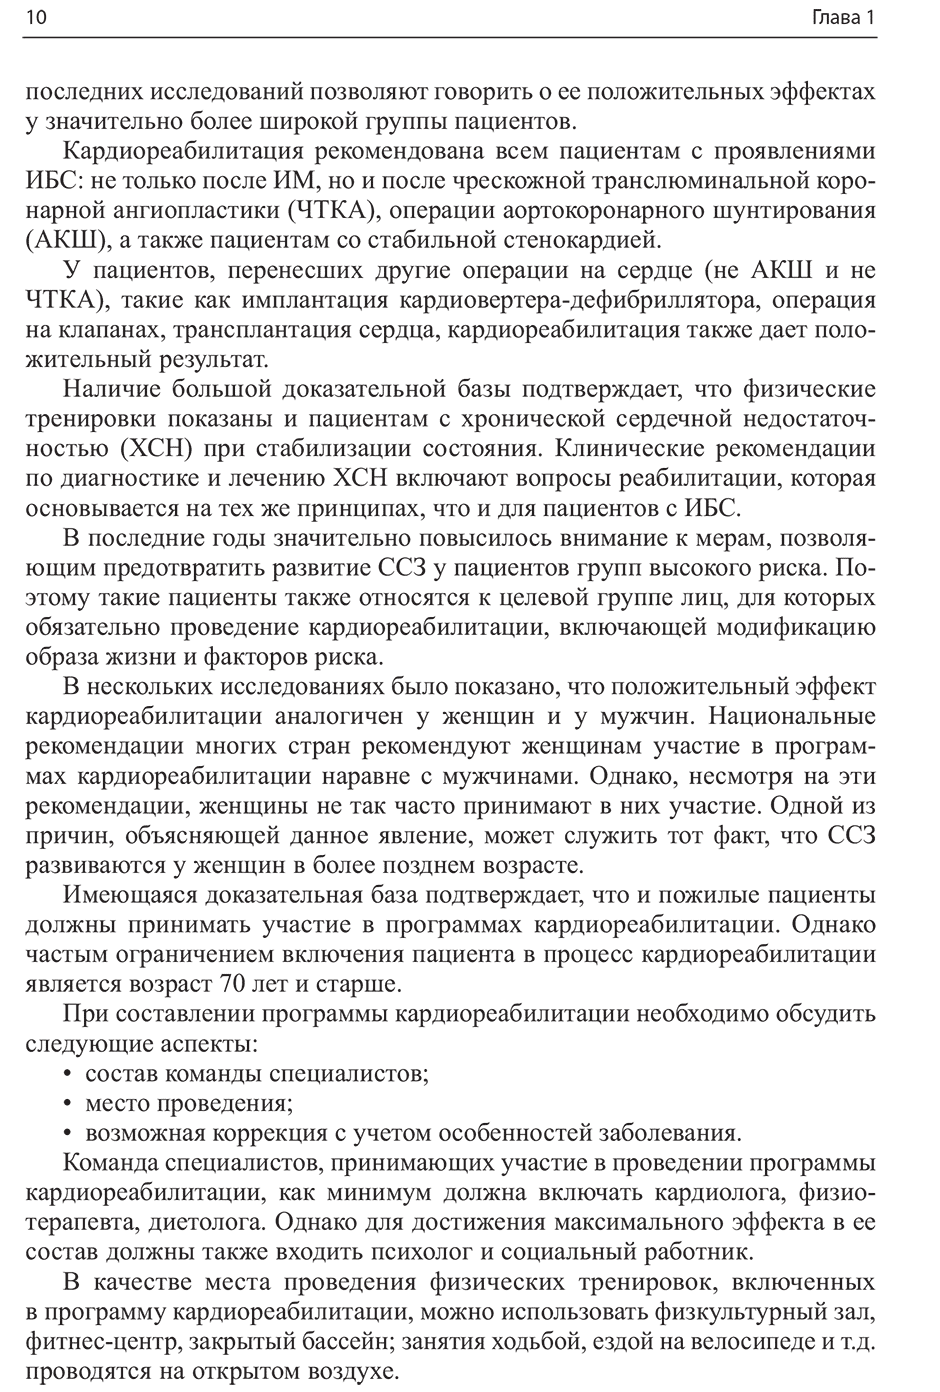 Пример страницы из книги "Кардиореабилитация" - Арутюнов Г. П., Рылова А. К., Колесникова Е. А.